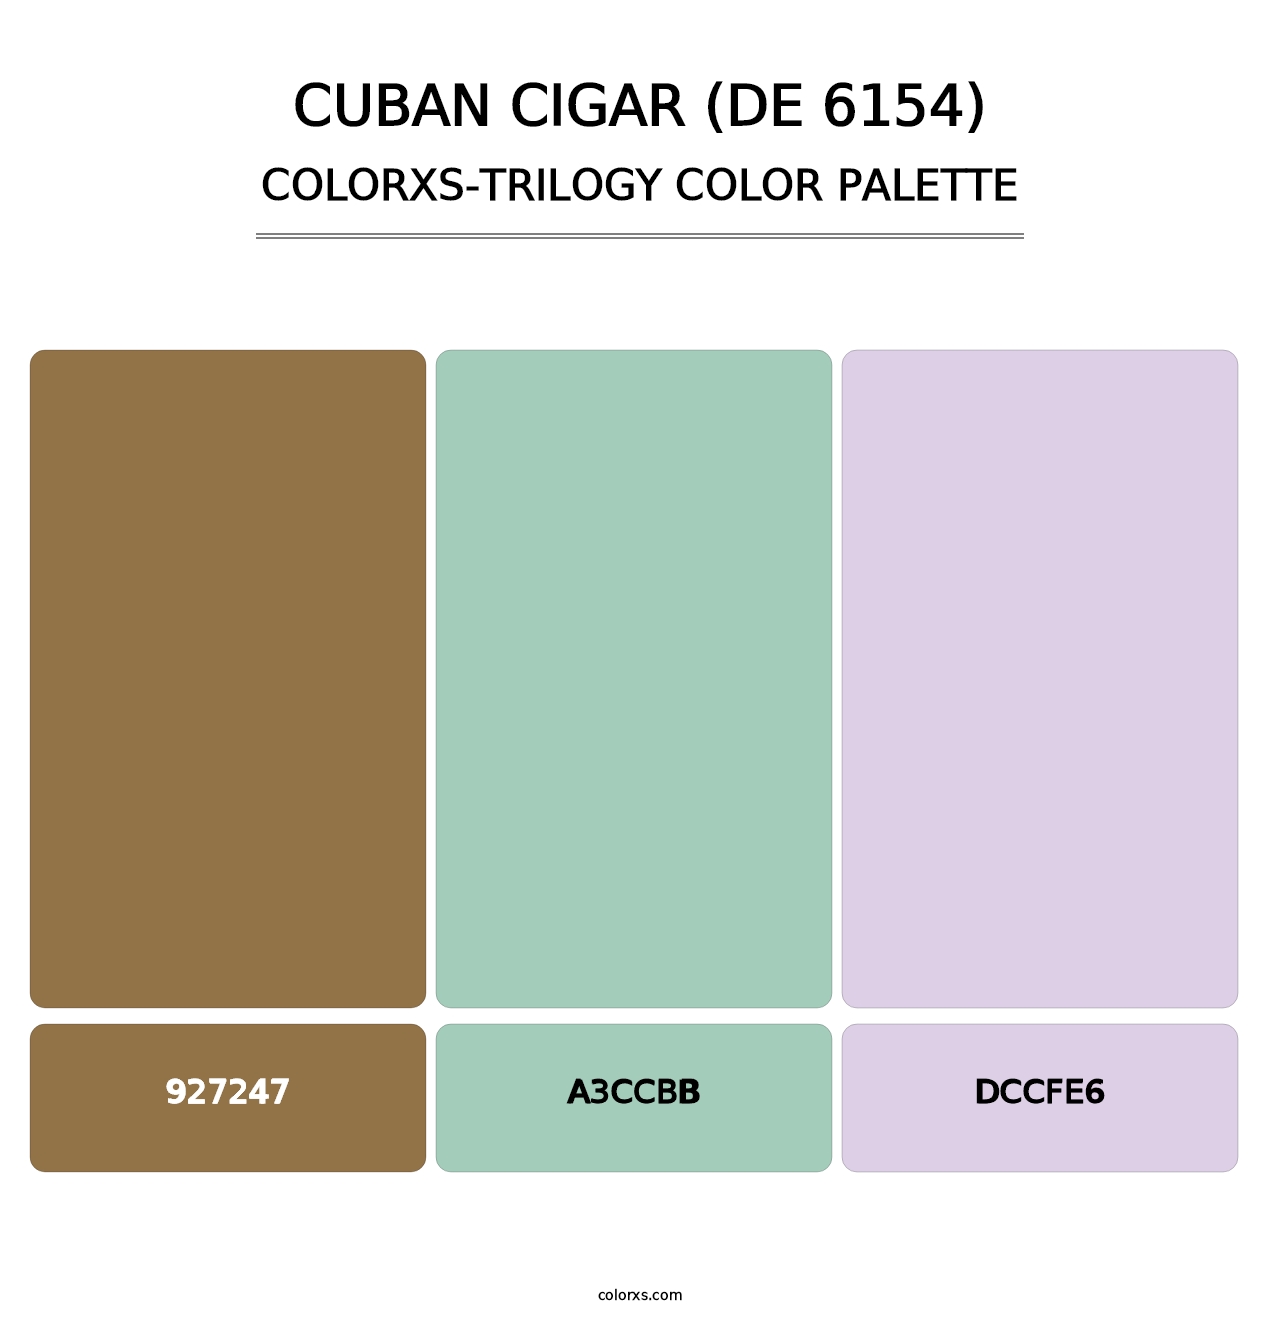 Cuban Cigar (DE 6154) - Colorxs Trilogy Palette